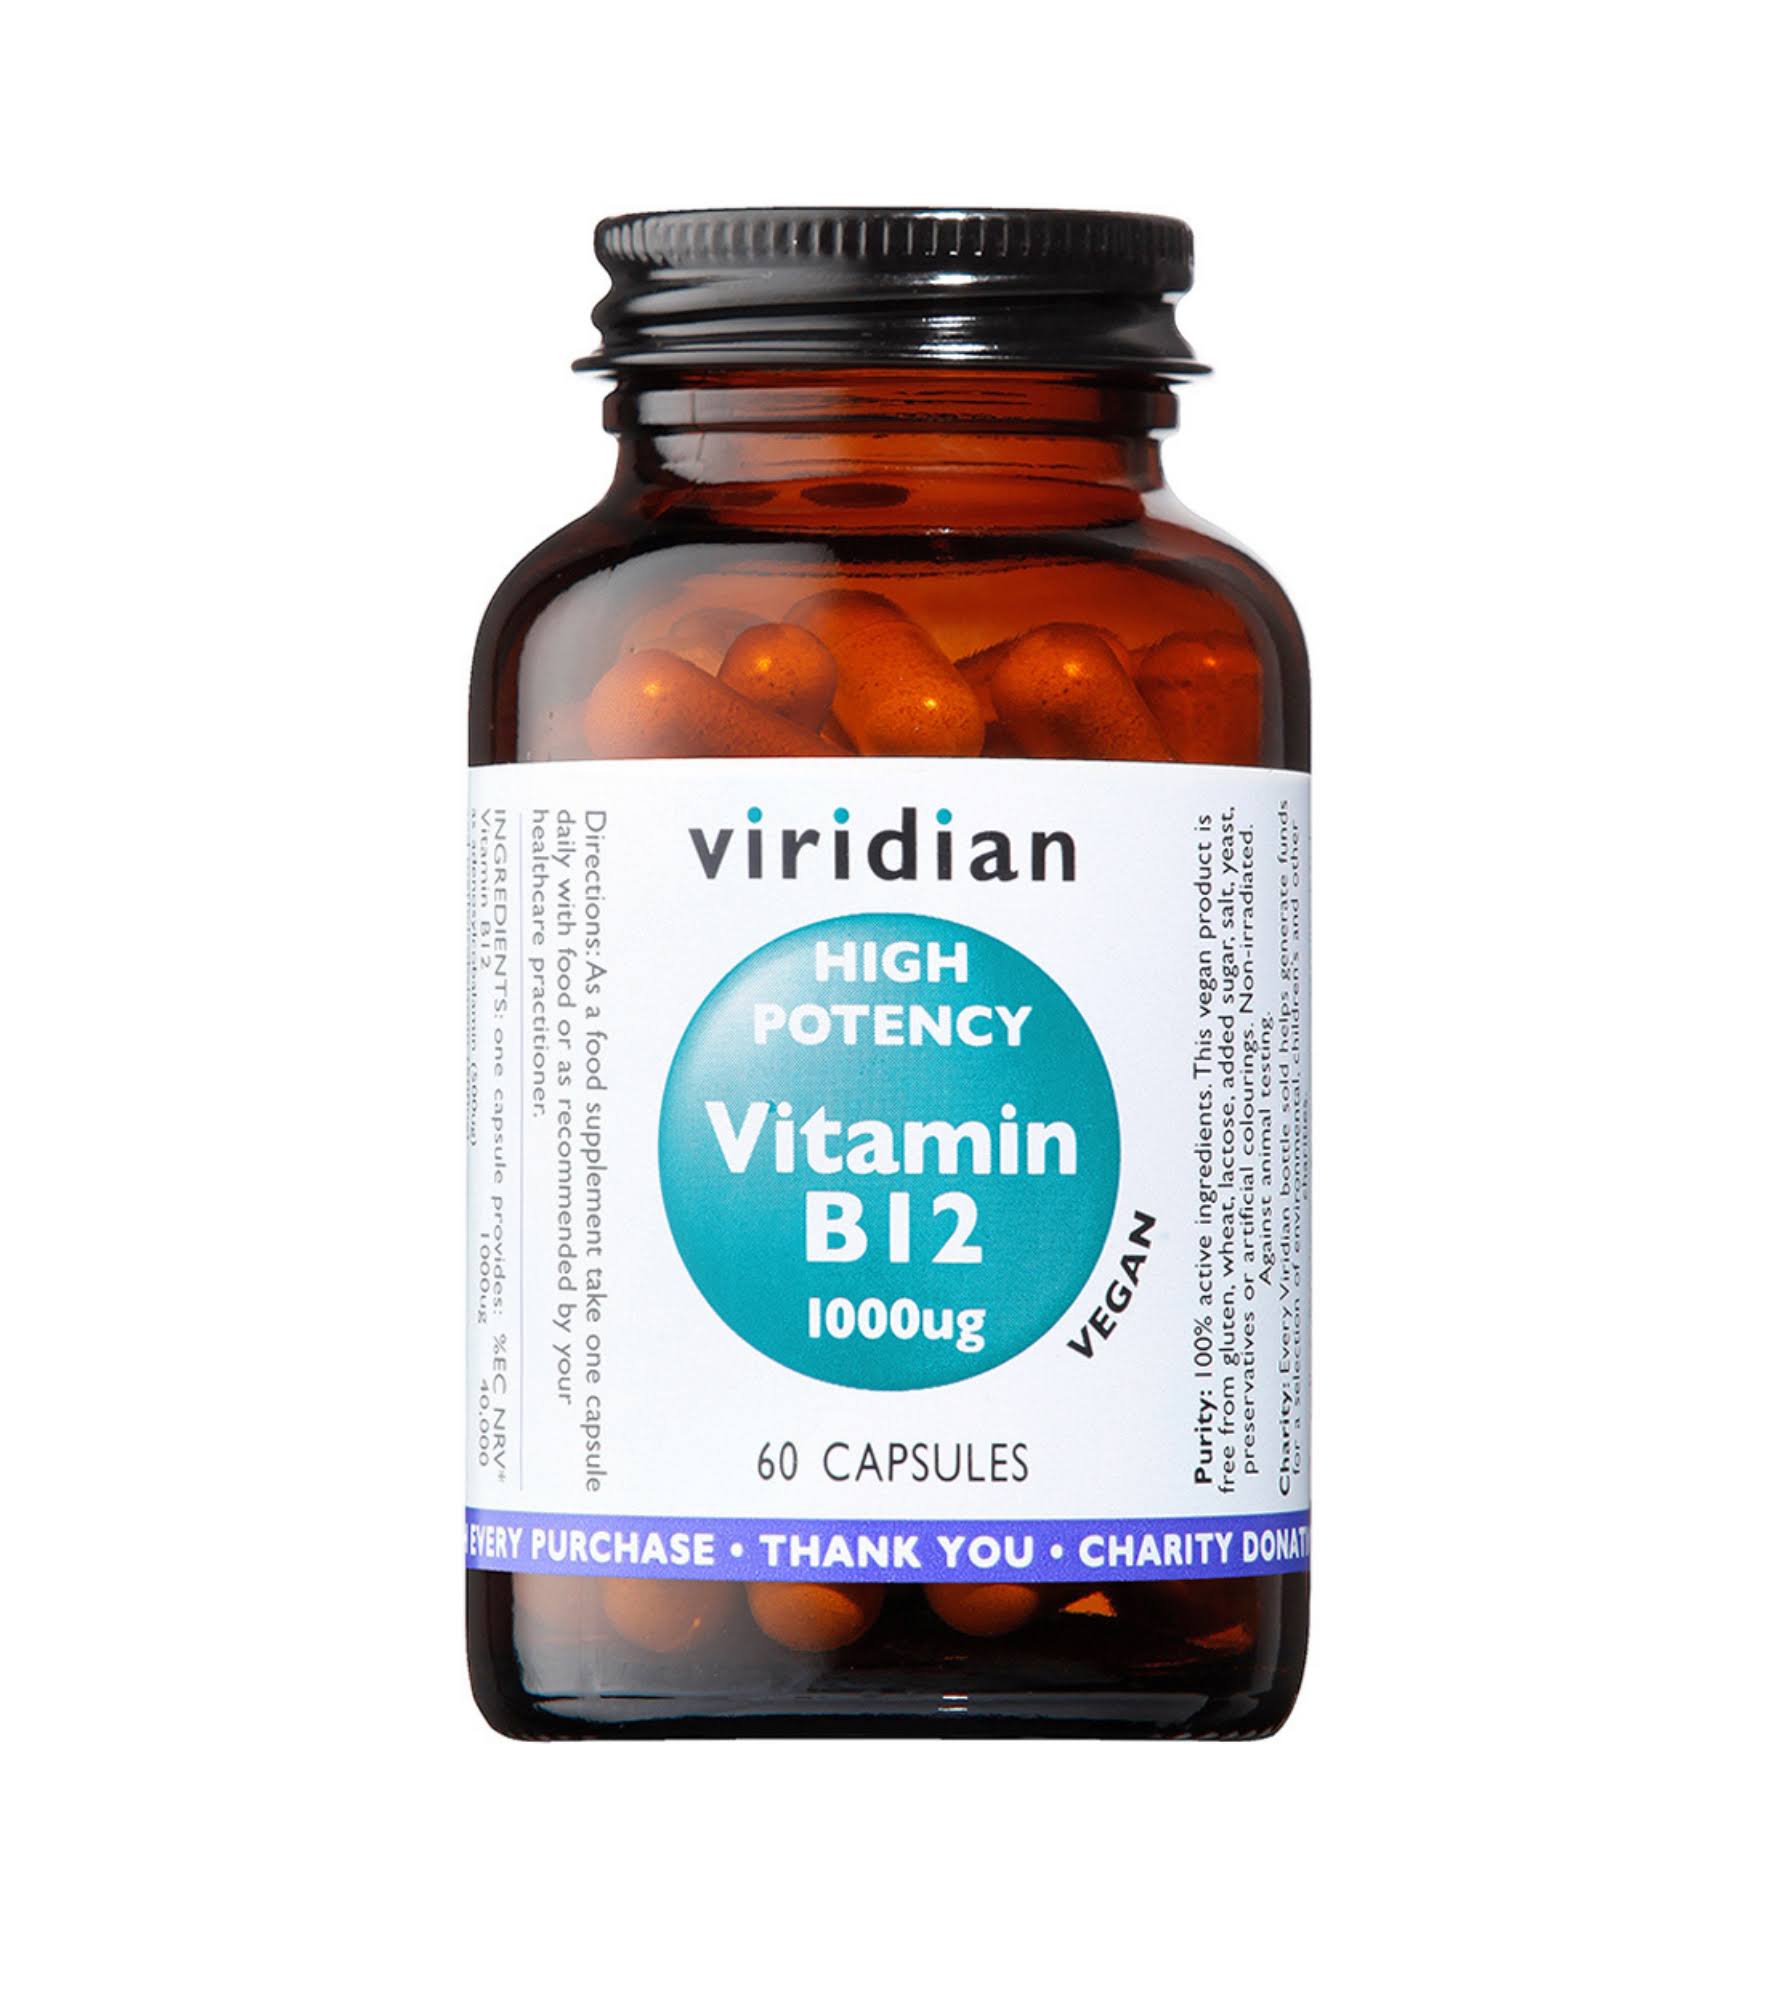 Viridian High Potency Vitamin B12 (60 Capsules)